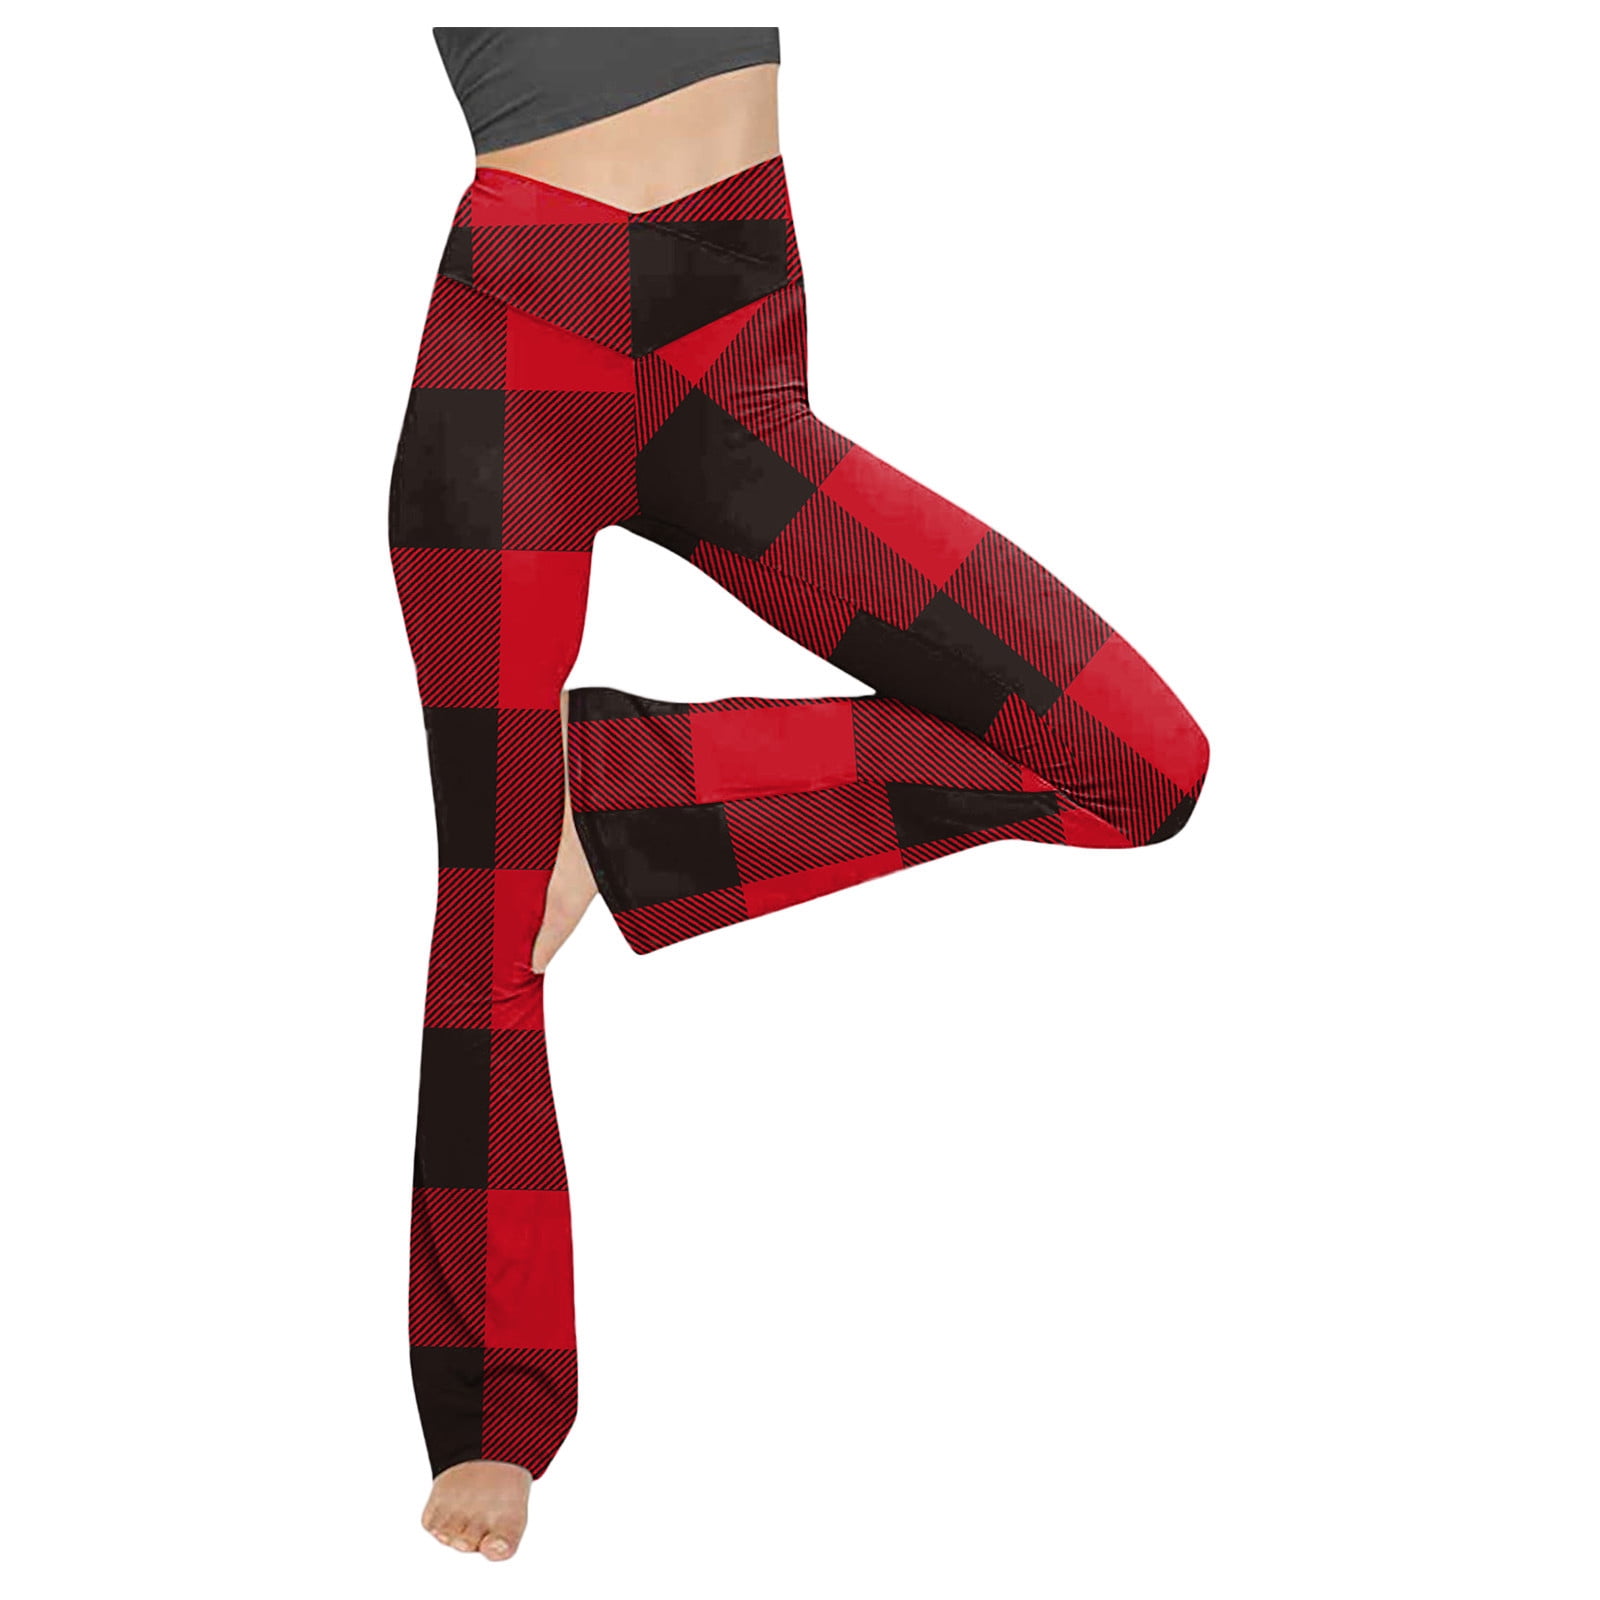 YWDJ Grey Flare Leggings Fashion Women Plaid Printed Yoga Pants